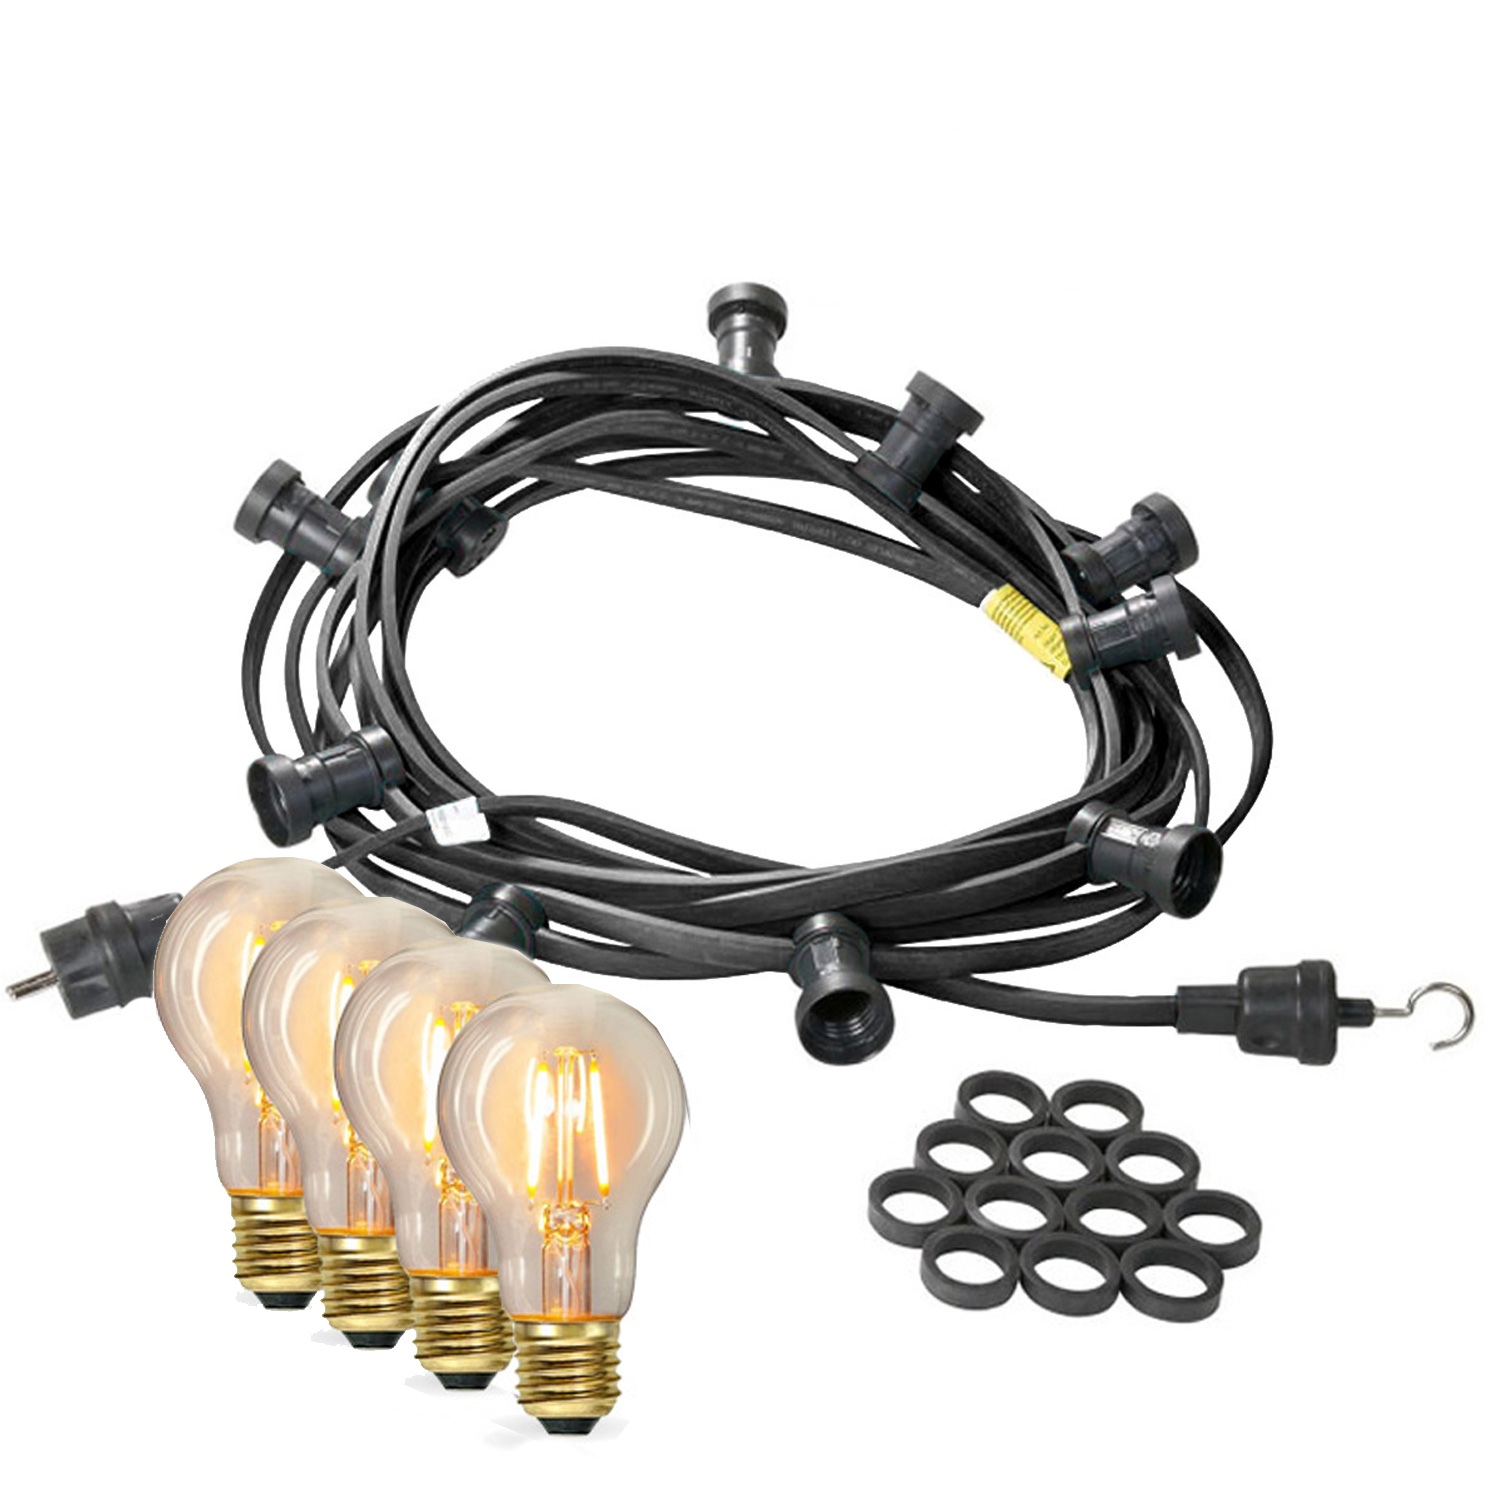 Illu-/Partylichterkette 30m - Außenlichterkette - Made in Germany - 30 x Edison LED Filamentlampen